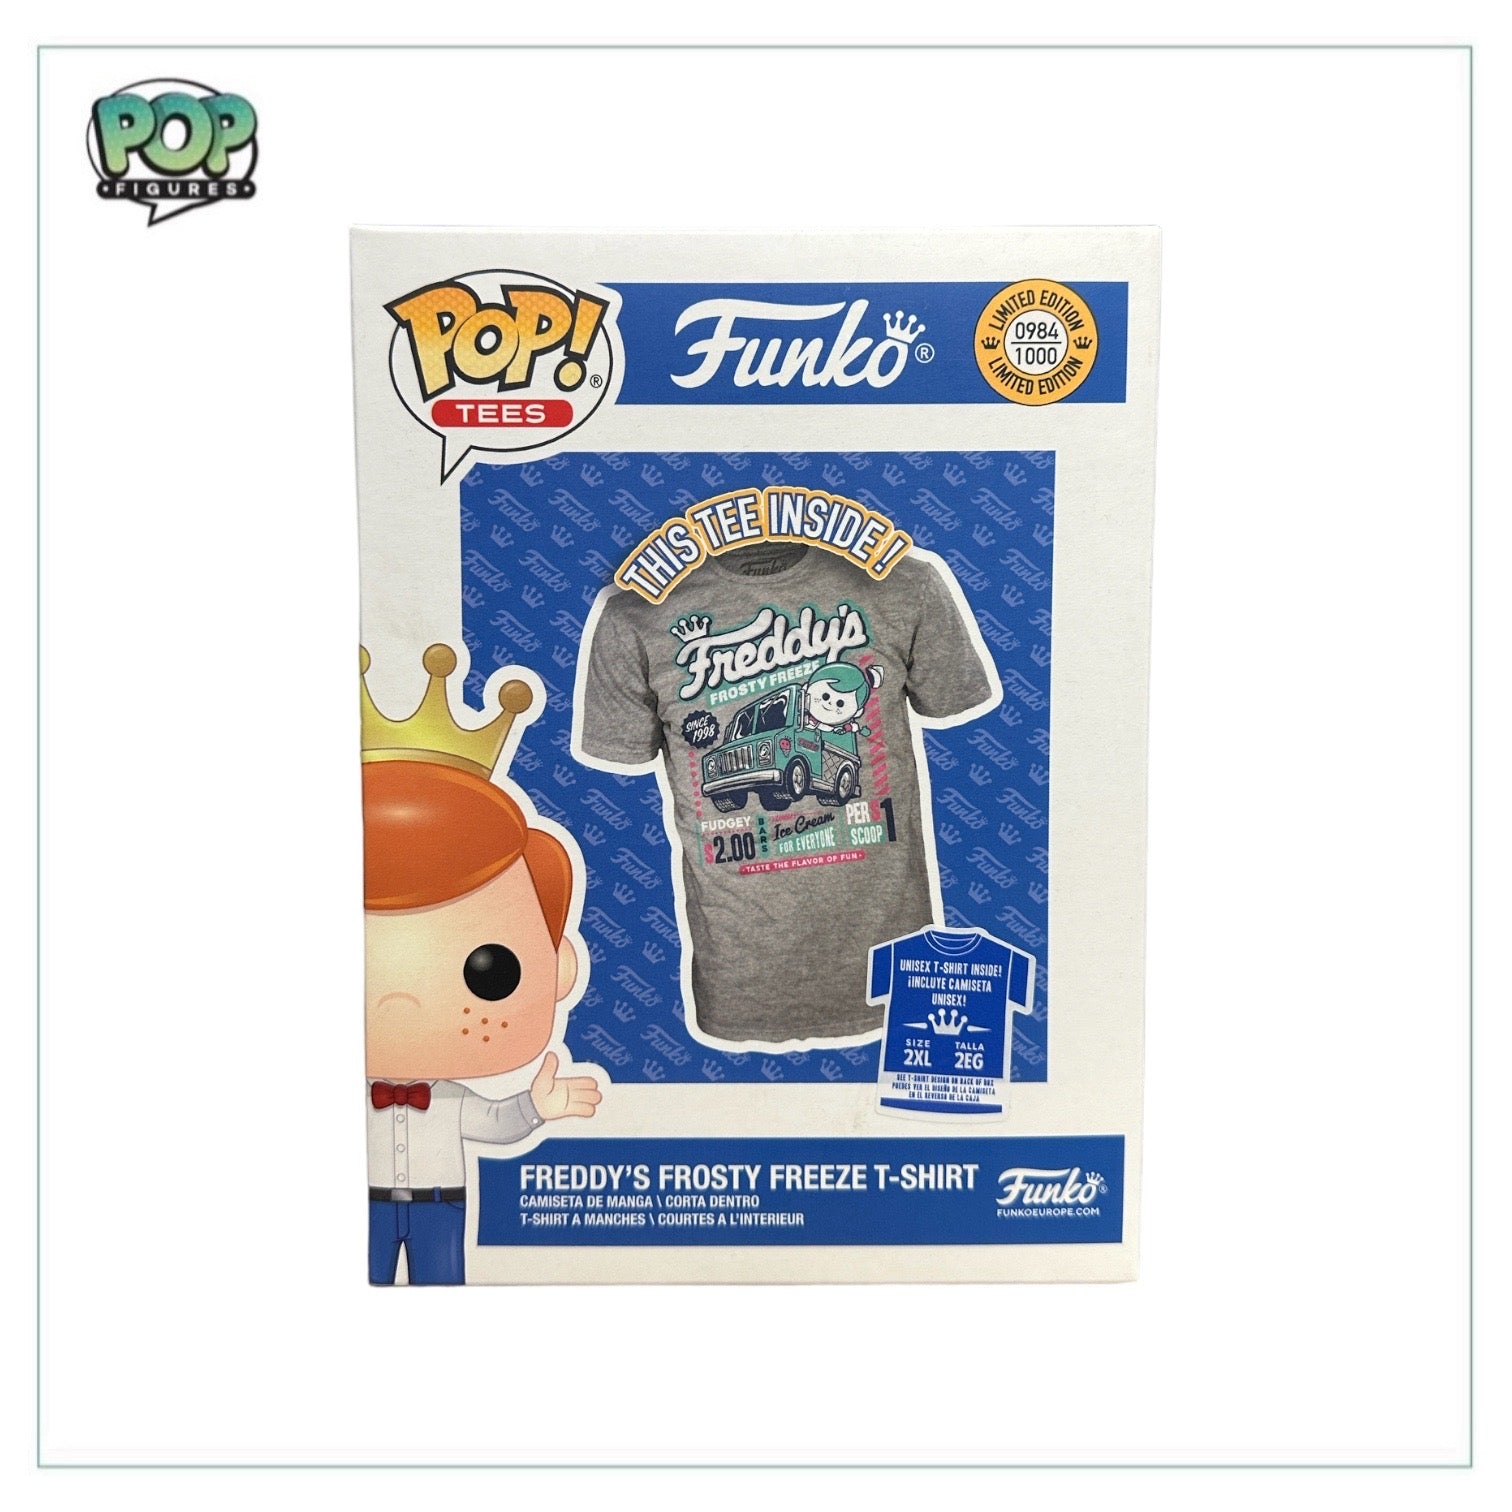 Freddy's Frosty Freeze Funko Pop Tee! - LE984/1000 - Size 2XL